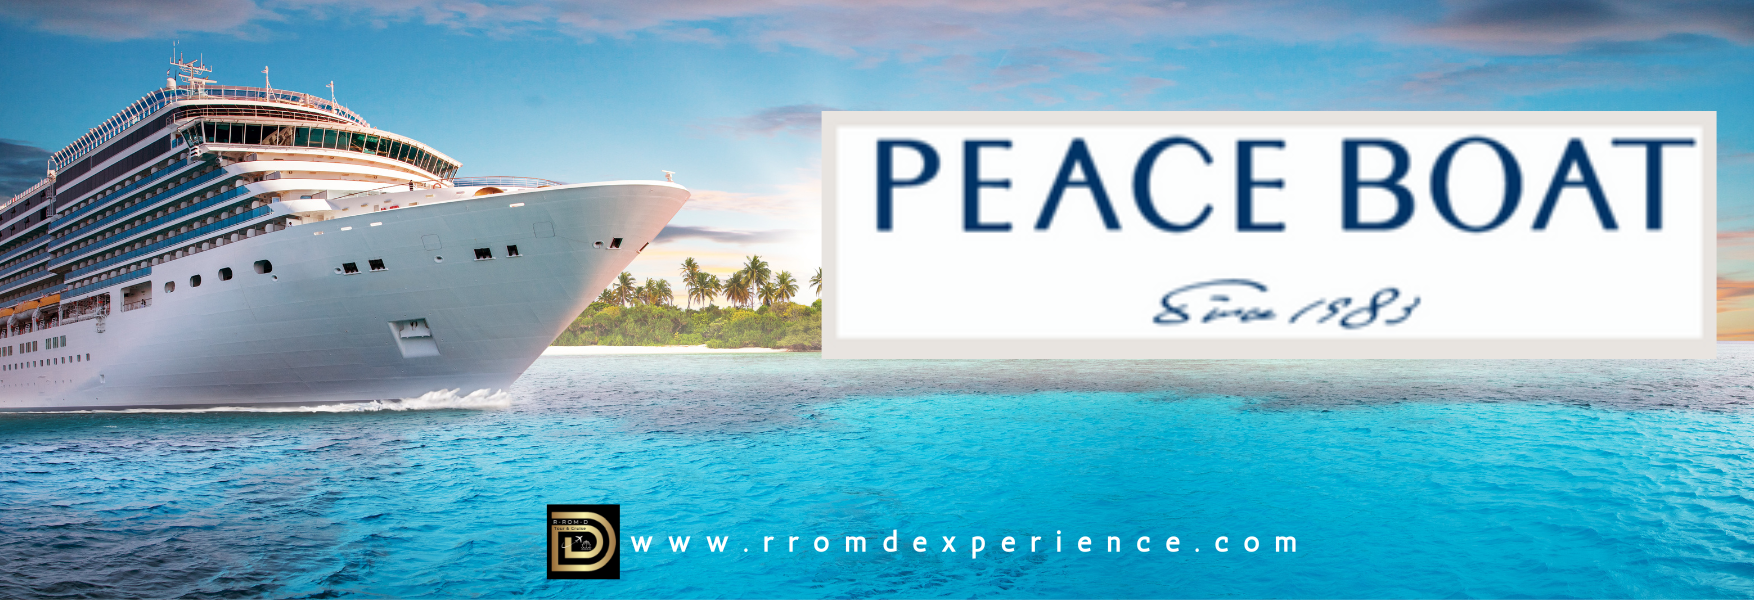 Peace Boat Cruise